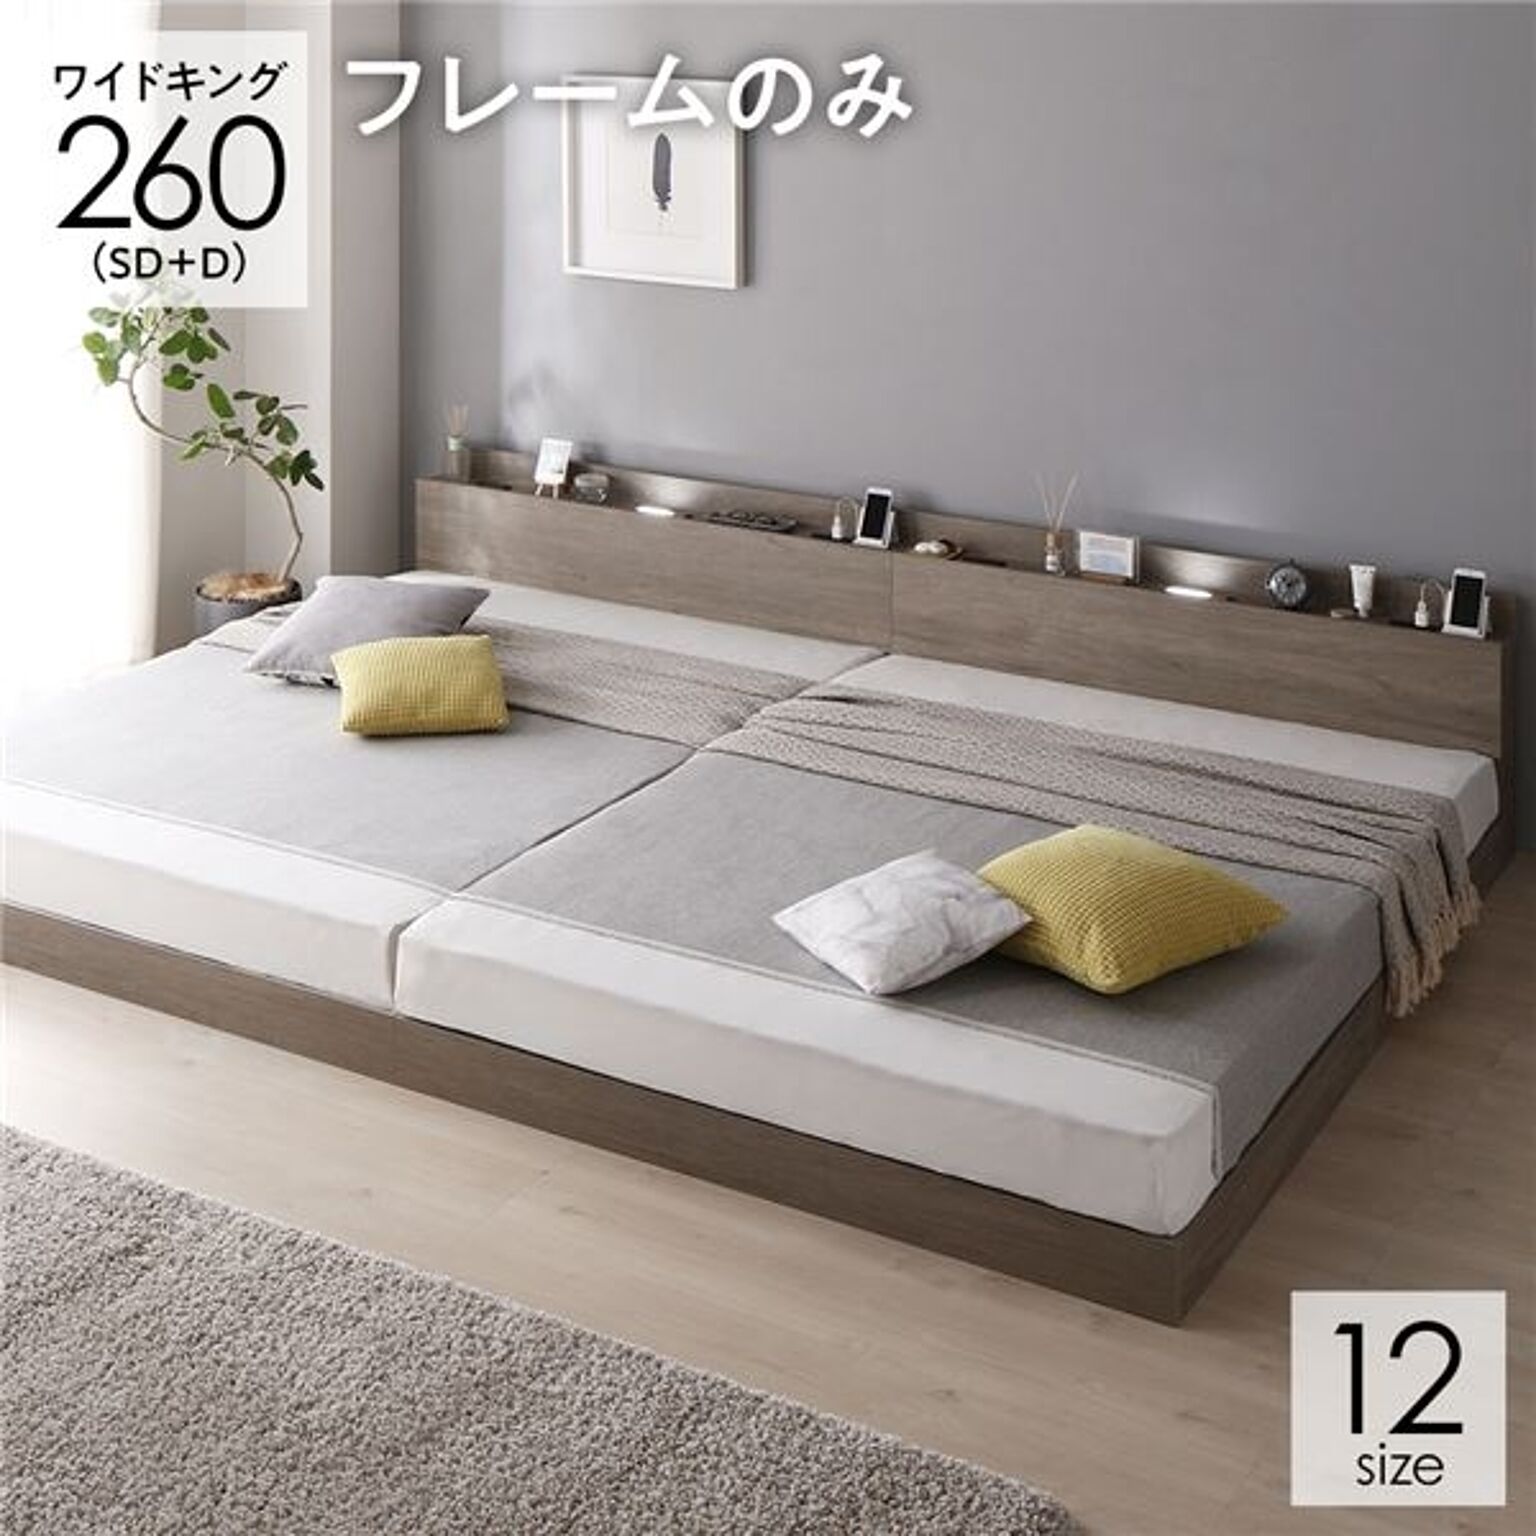 ベッド 連結ベッド ワイドキング 260(SD+D セミダブル+ダブル) ベッドフレームのみ グレージュ 低床 連結 ロータイプ LED照明付き 宮棚付き 2口 コンセント付き すのこ 木製